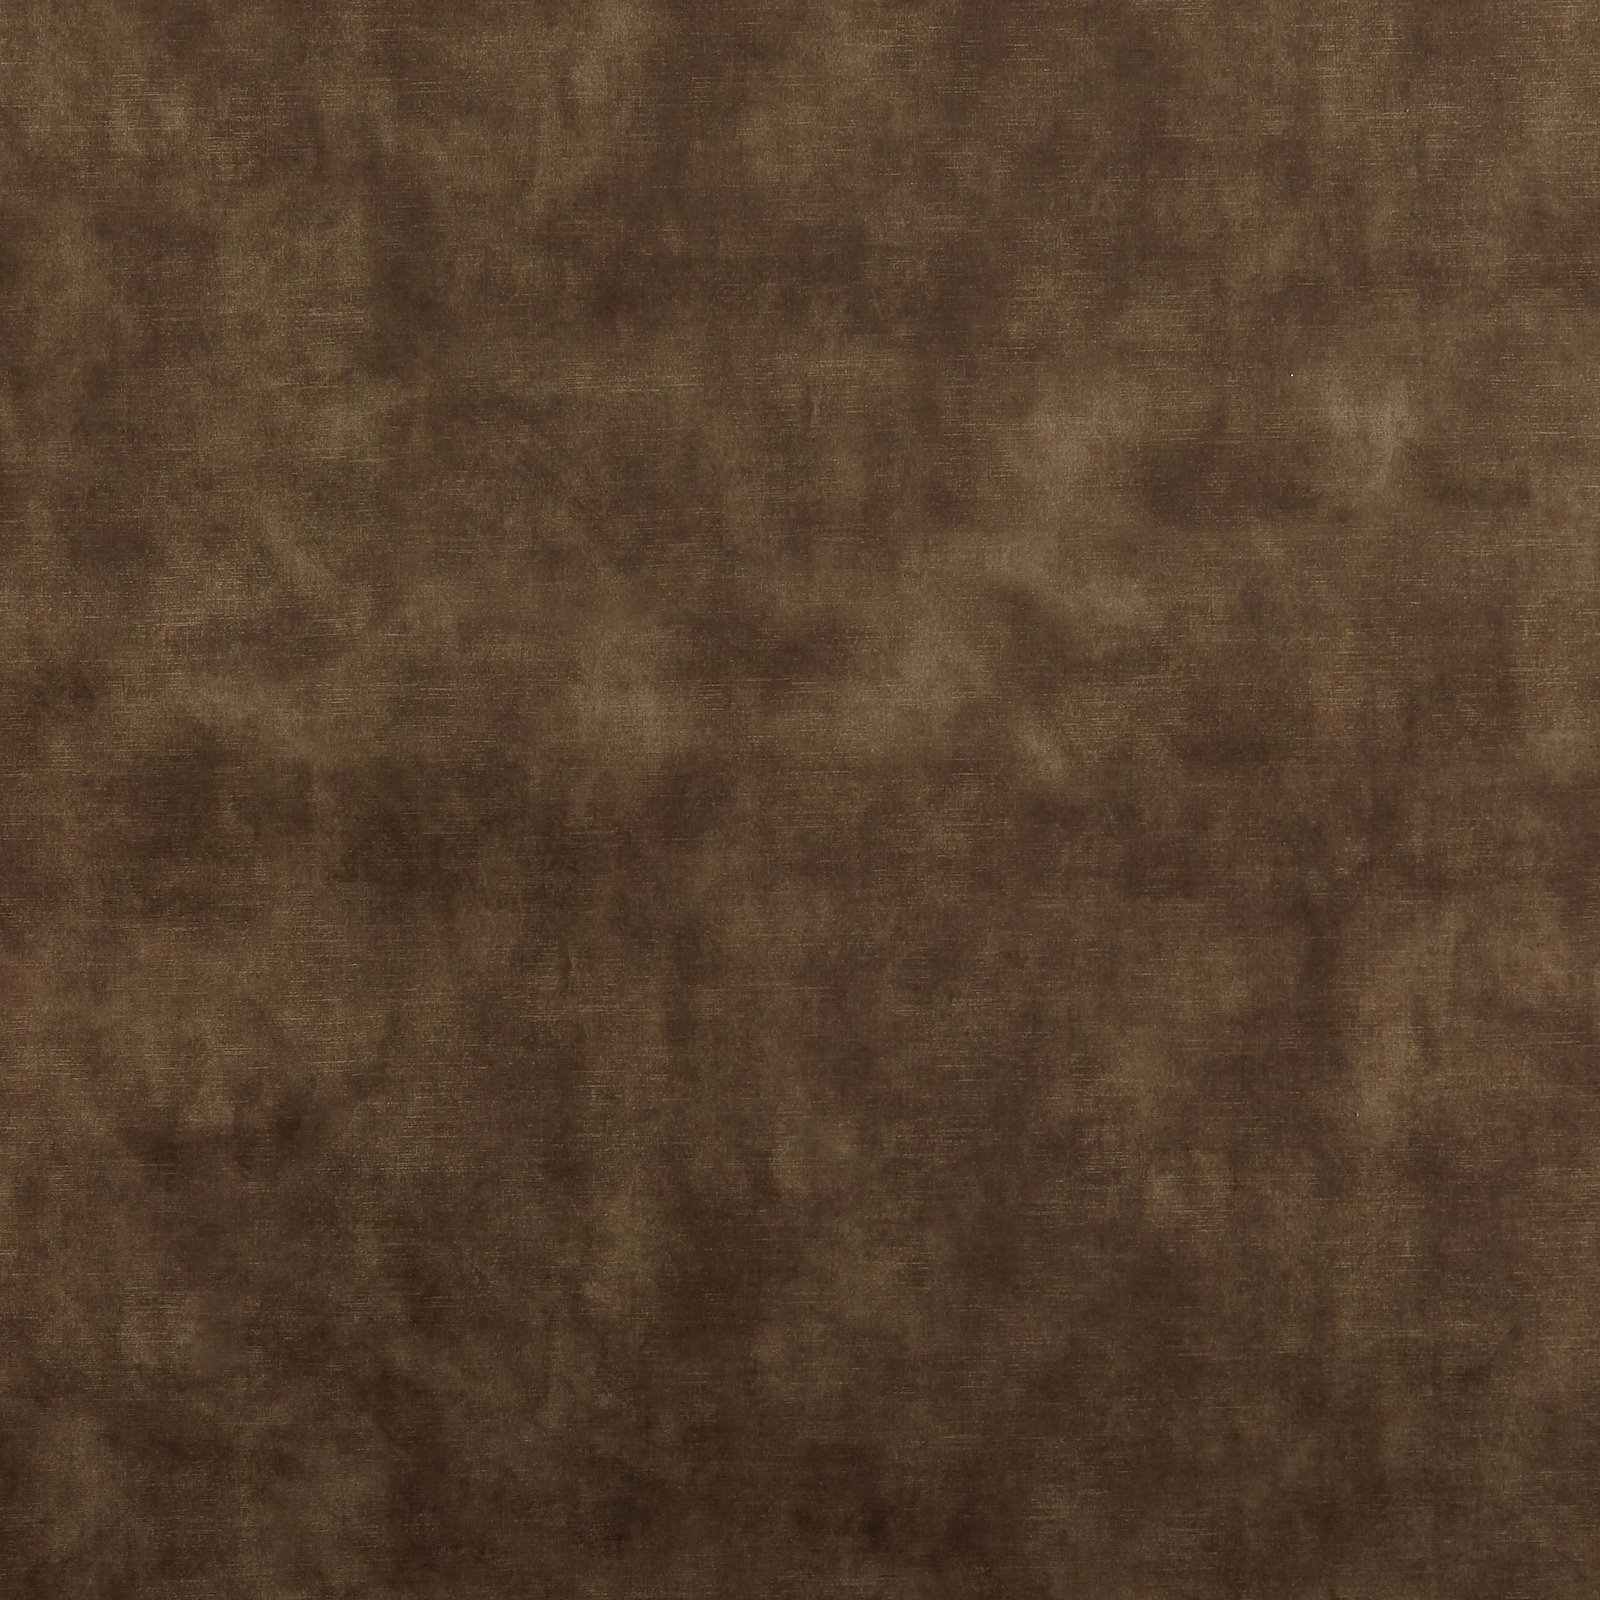 Upholstery velvet dark brown shiny 826641_pack_solid